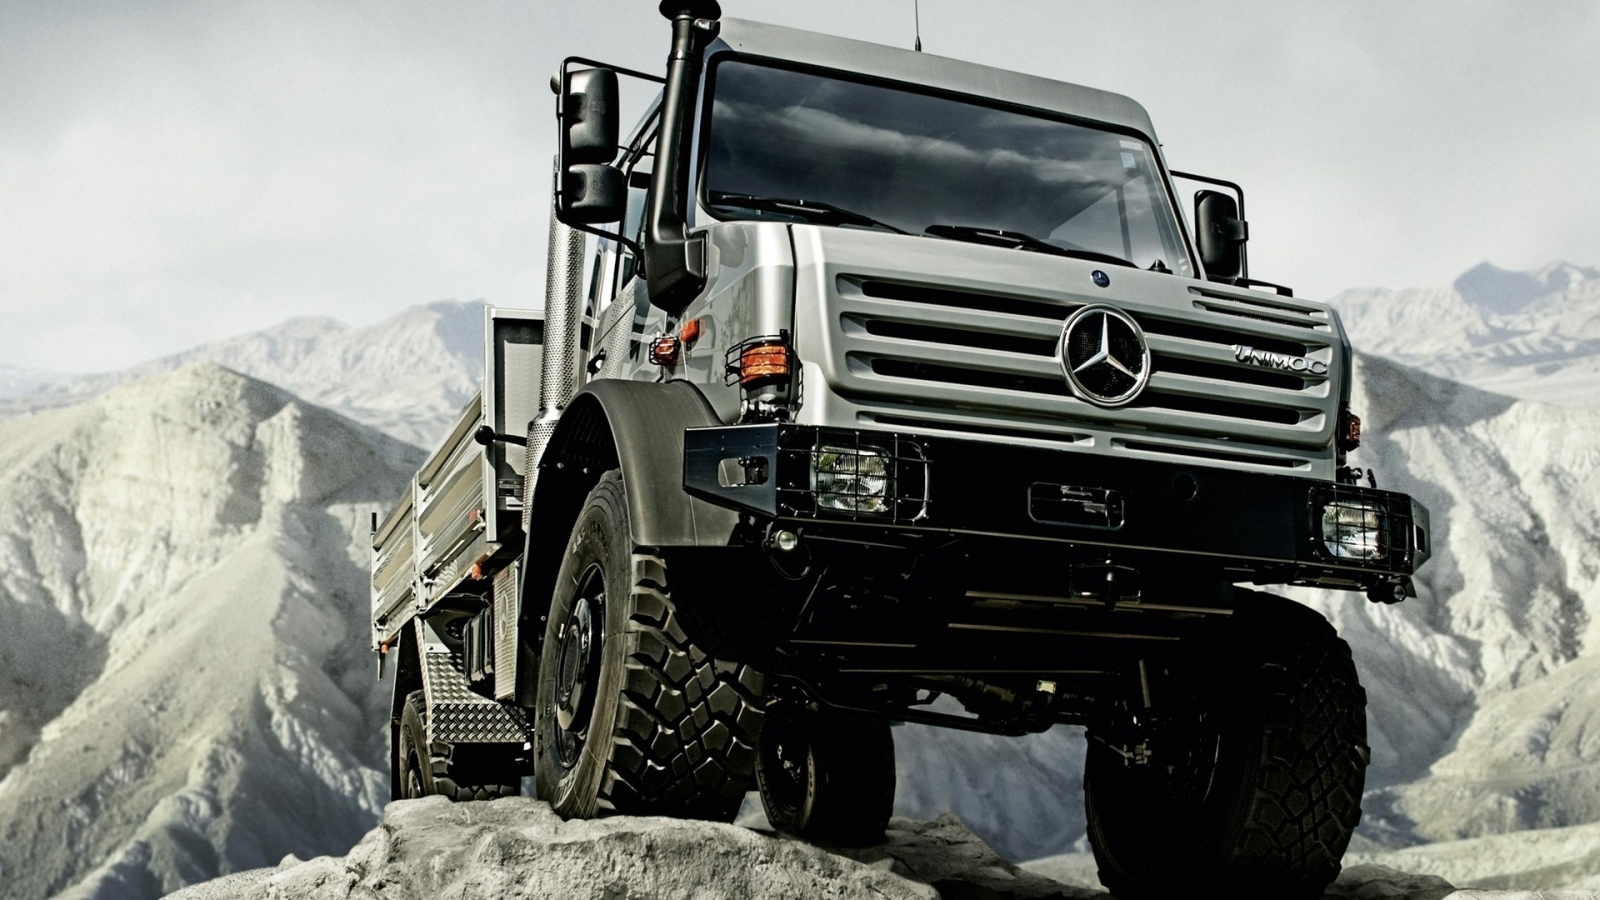 Mercedes Benz Unimog U5000 Truck for 1600 x 900 HDTV resolution